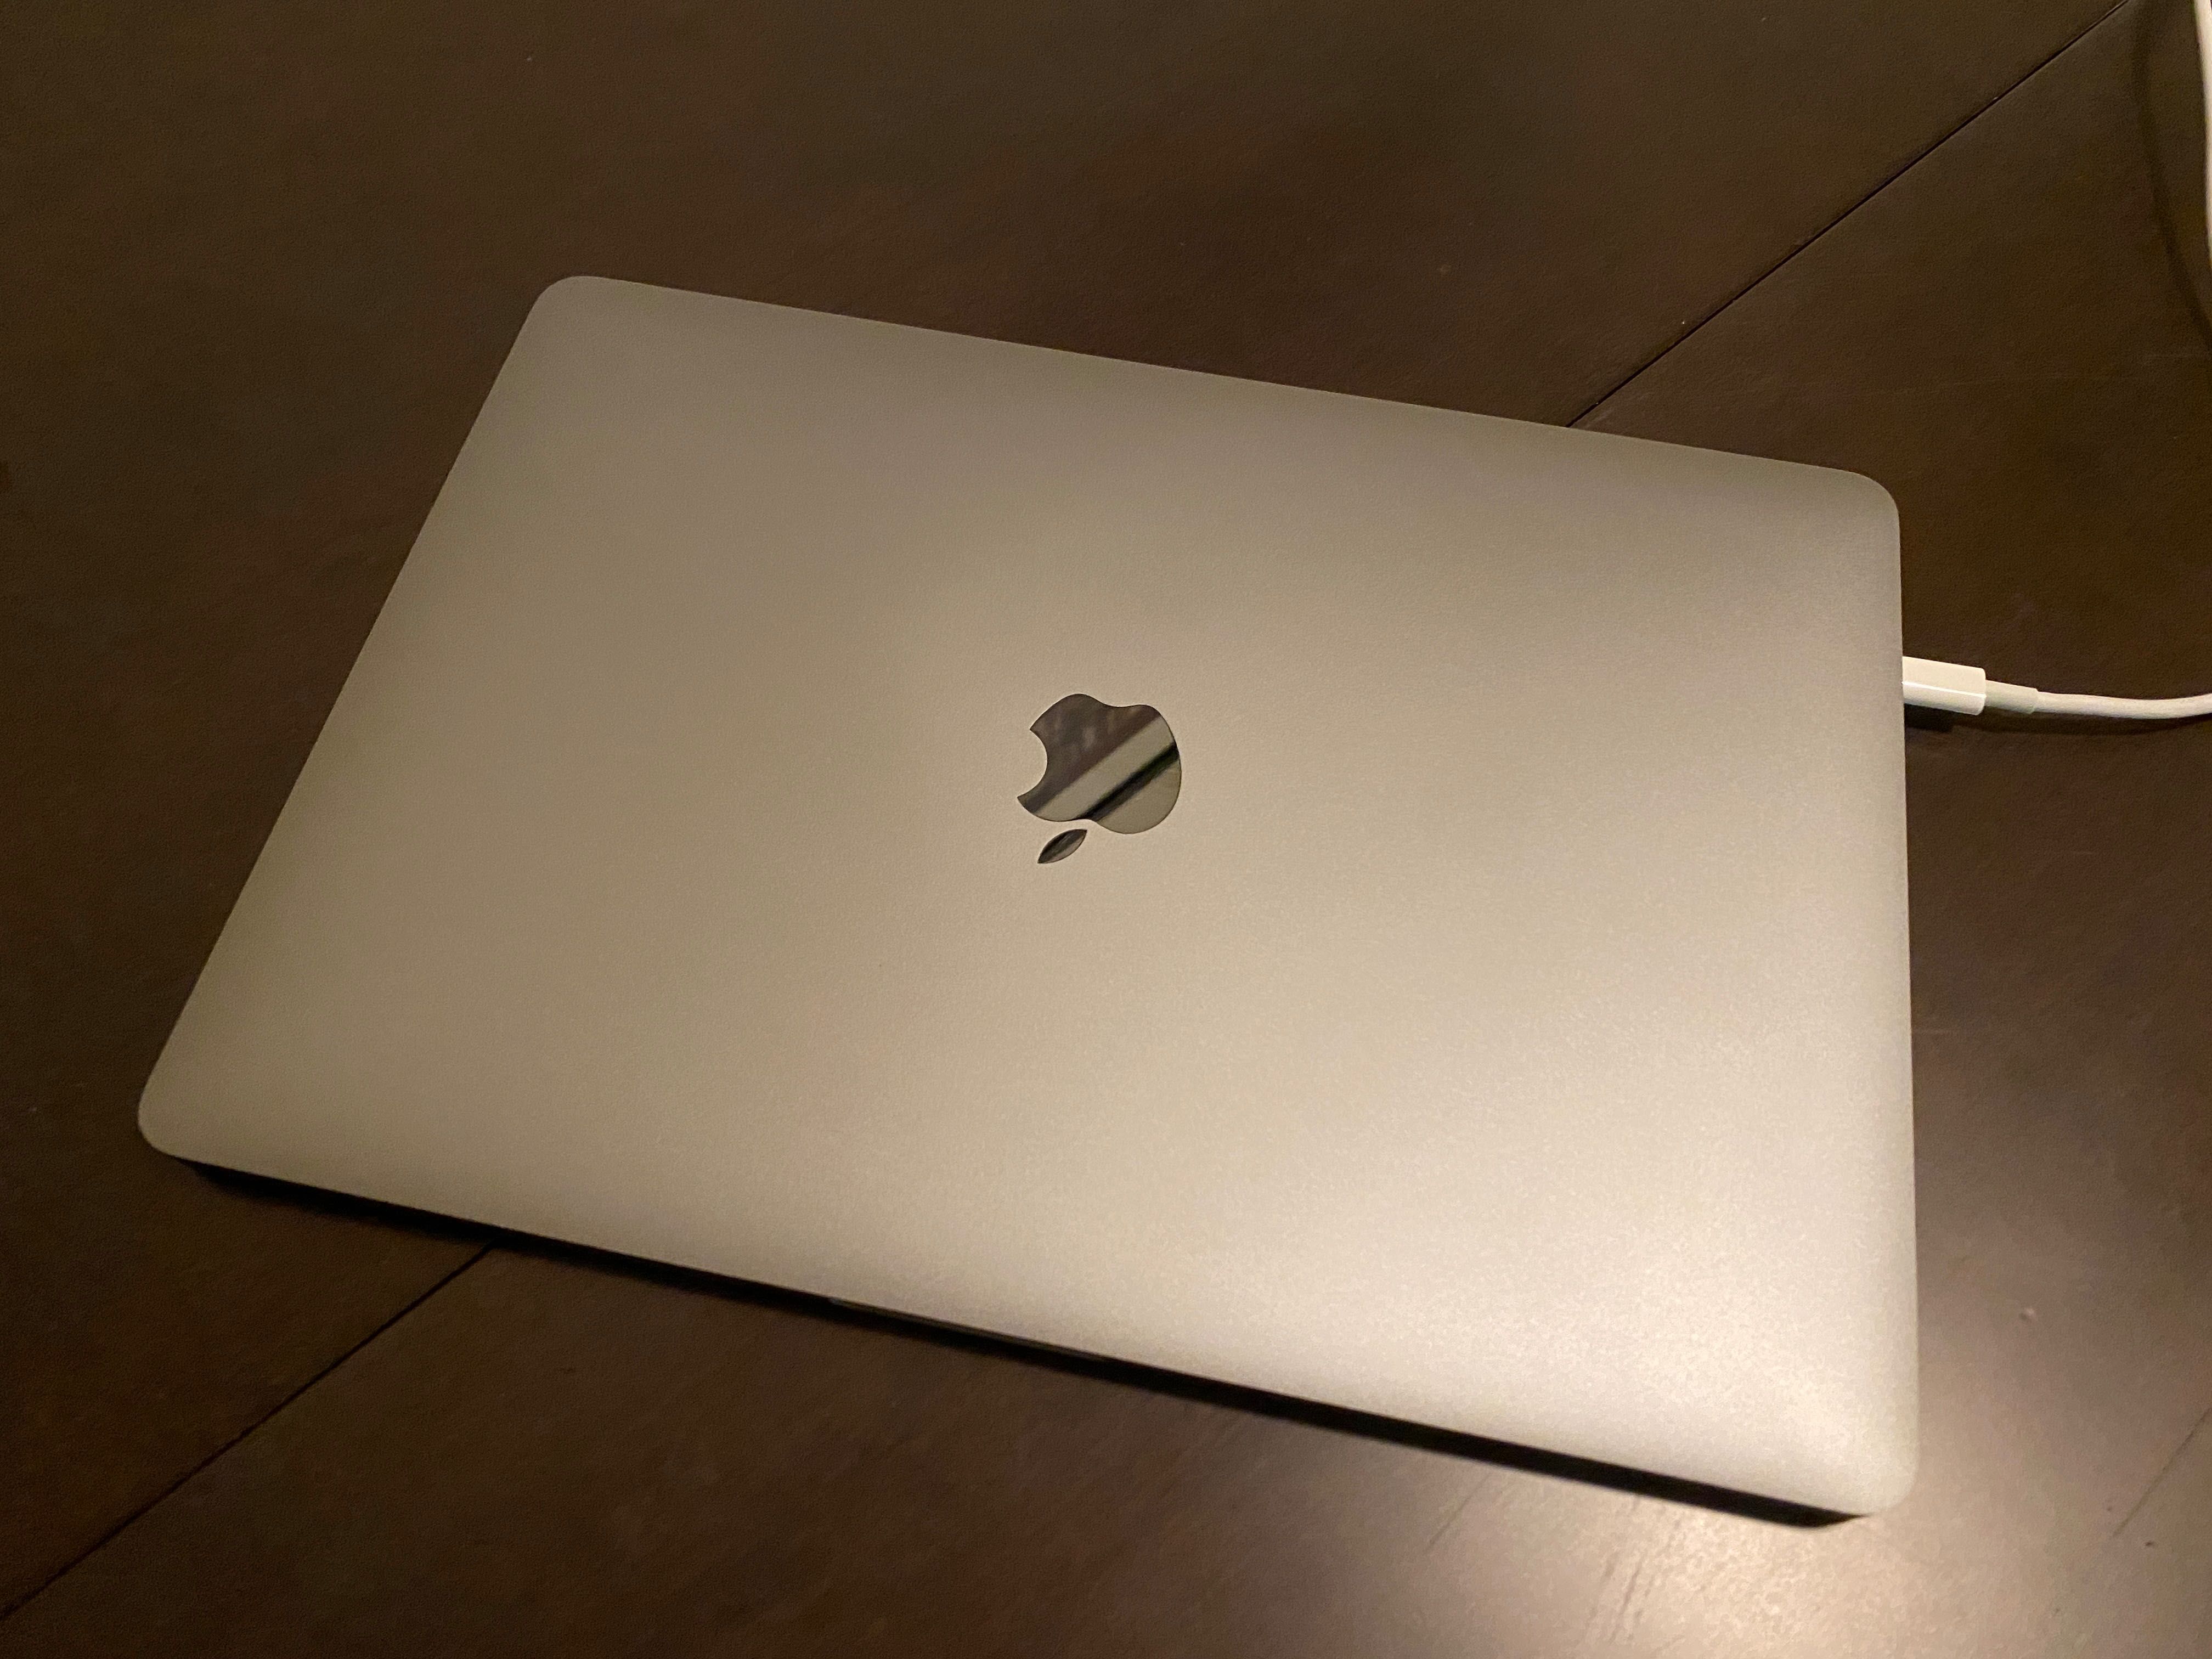 MacBook Pro 2018 - 13"